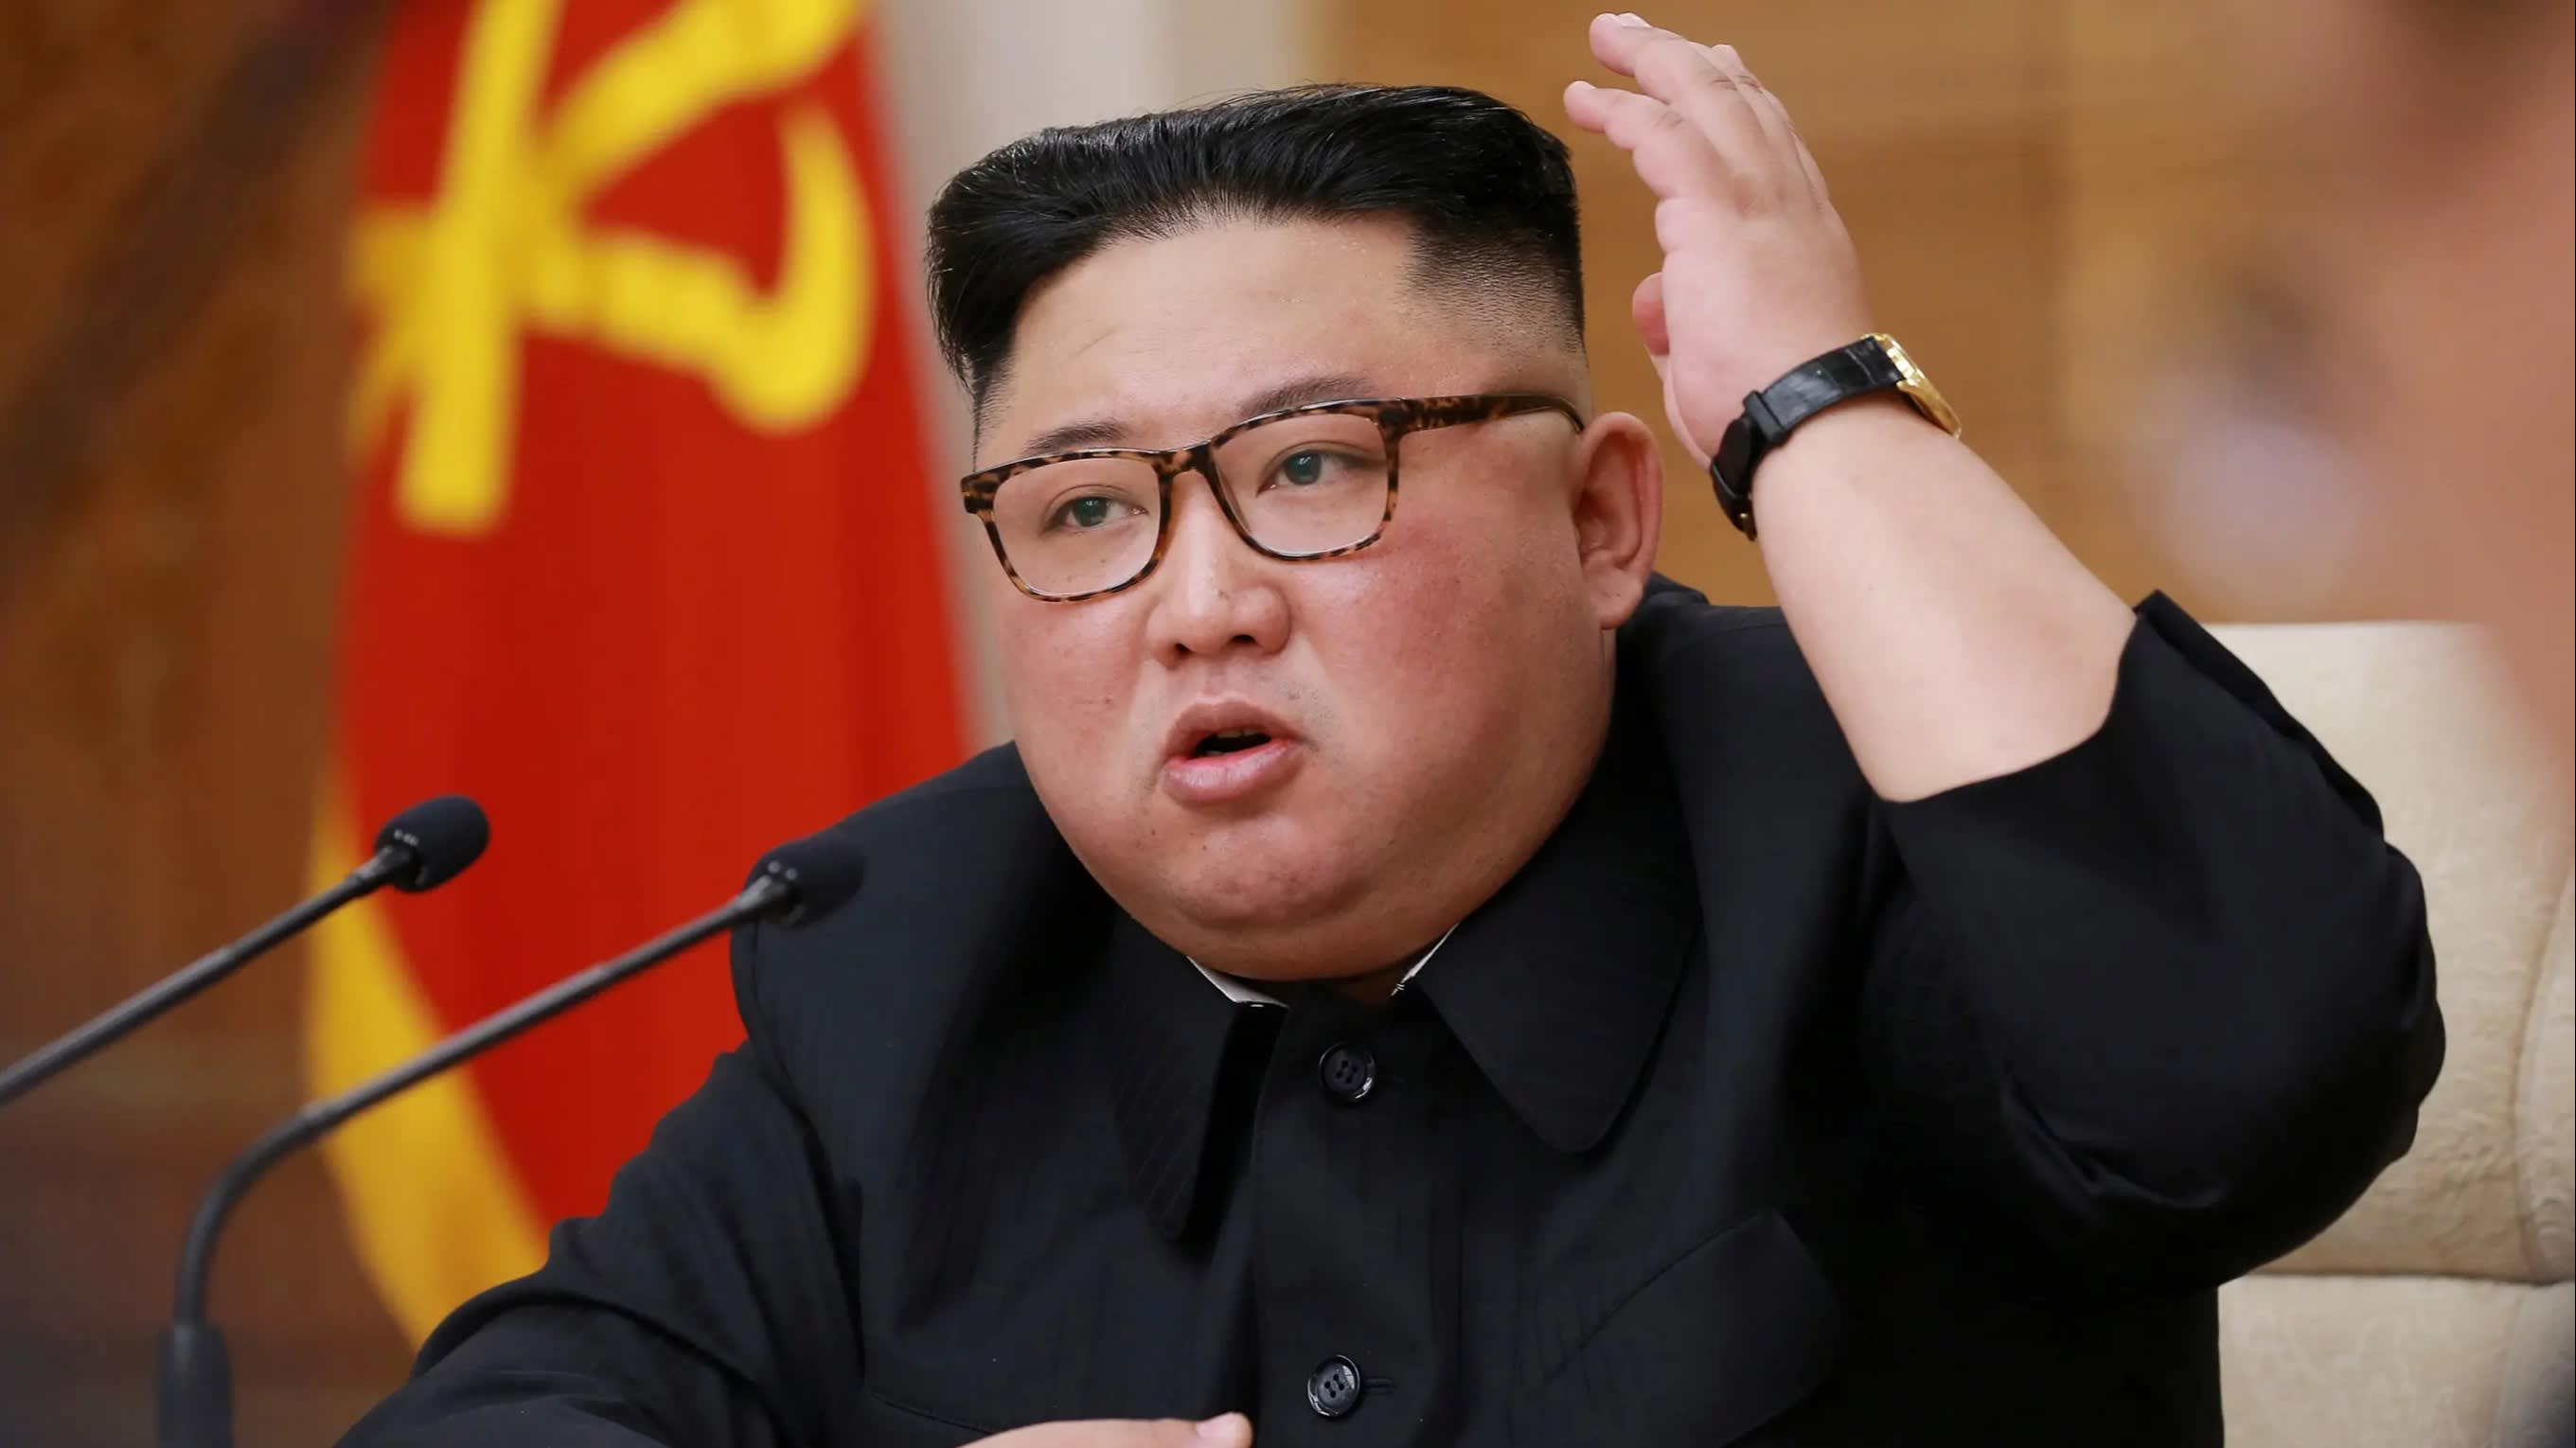 Kim Jong-Un warns of serious consequences if coronavirus reaches N Korea